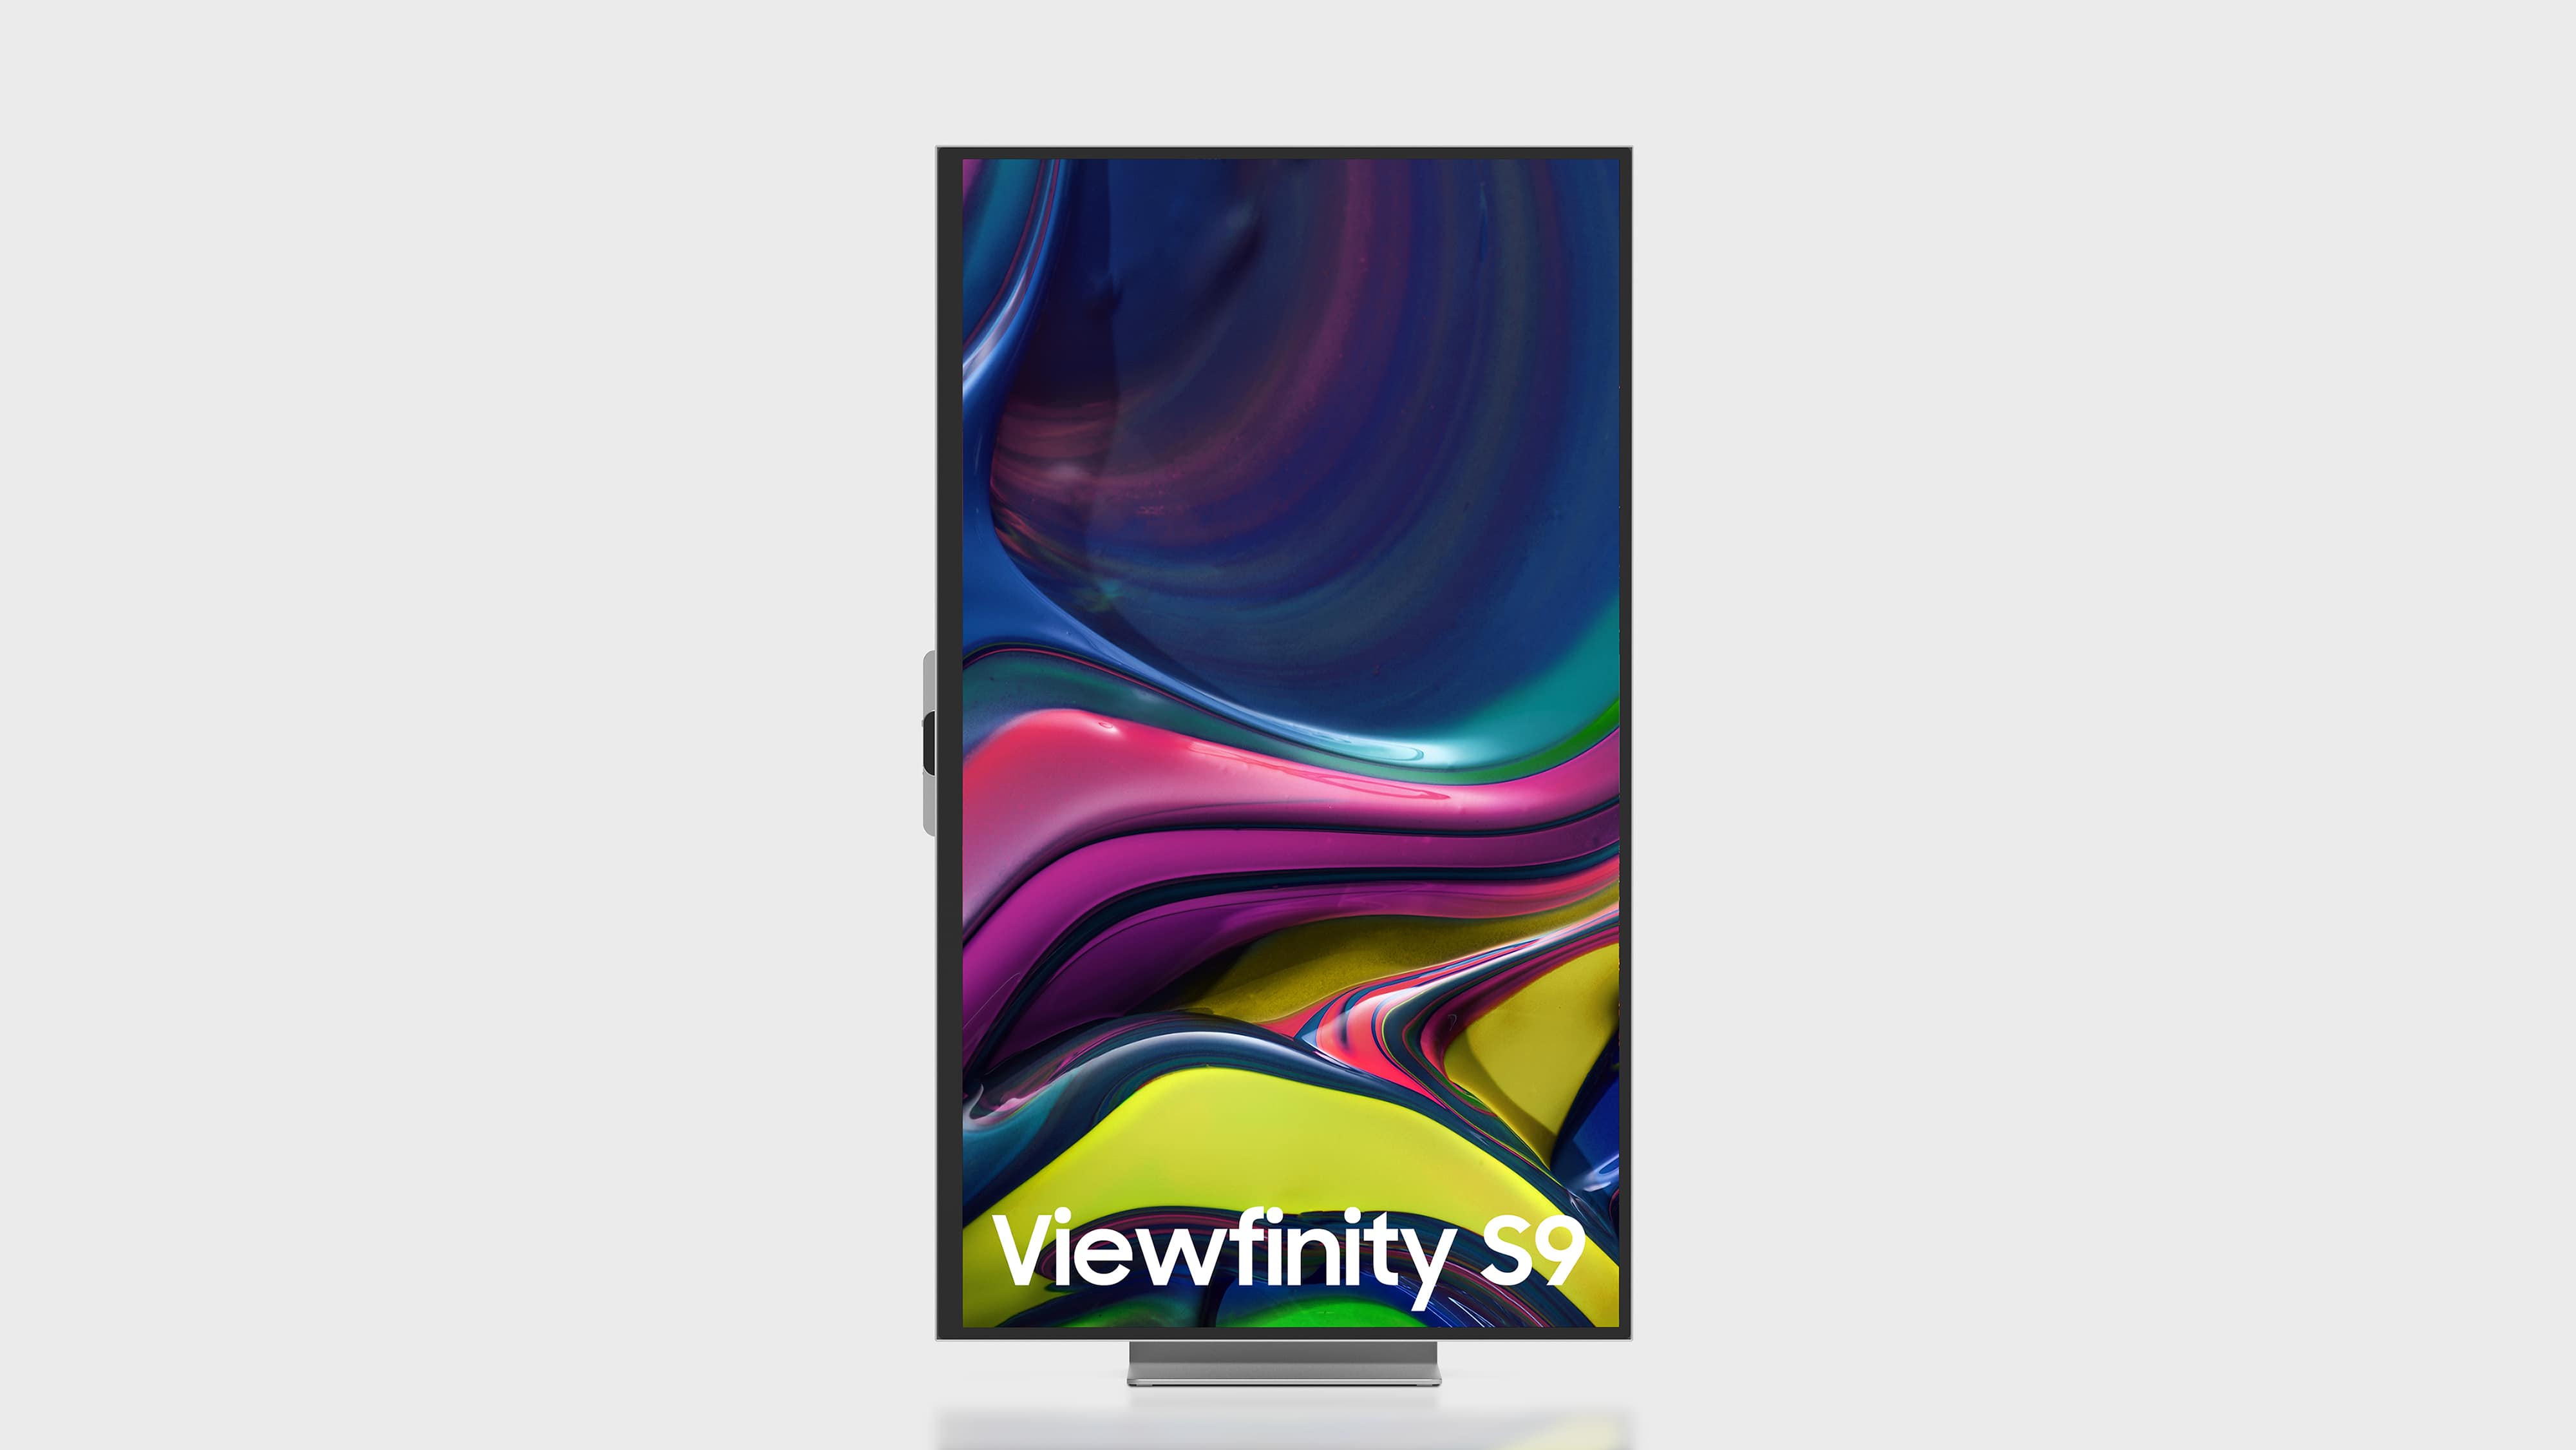 Samsung viewfinity s8. Viewfinity s9. Samsung Viewfinity s9. Samsung Monitor Viewfinity s9. Самсунг дисплей Viewfinity s9.